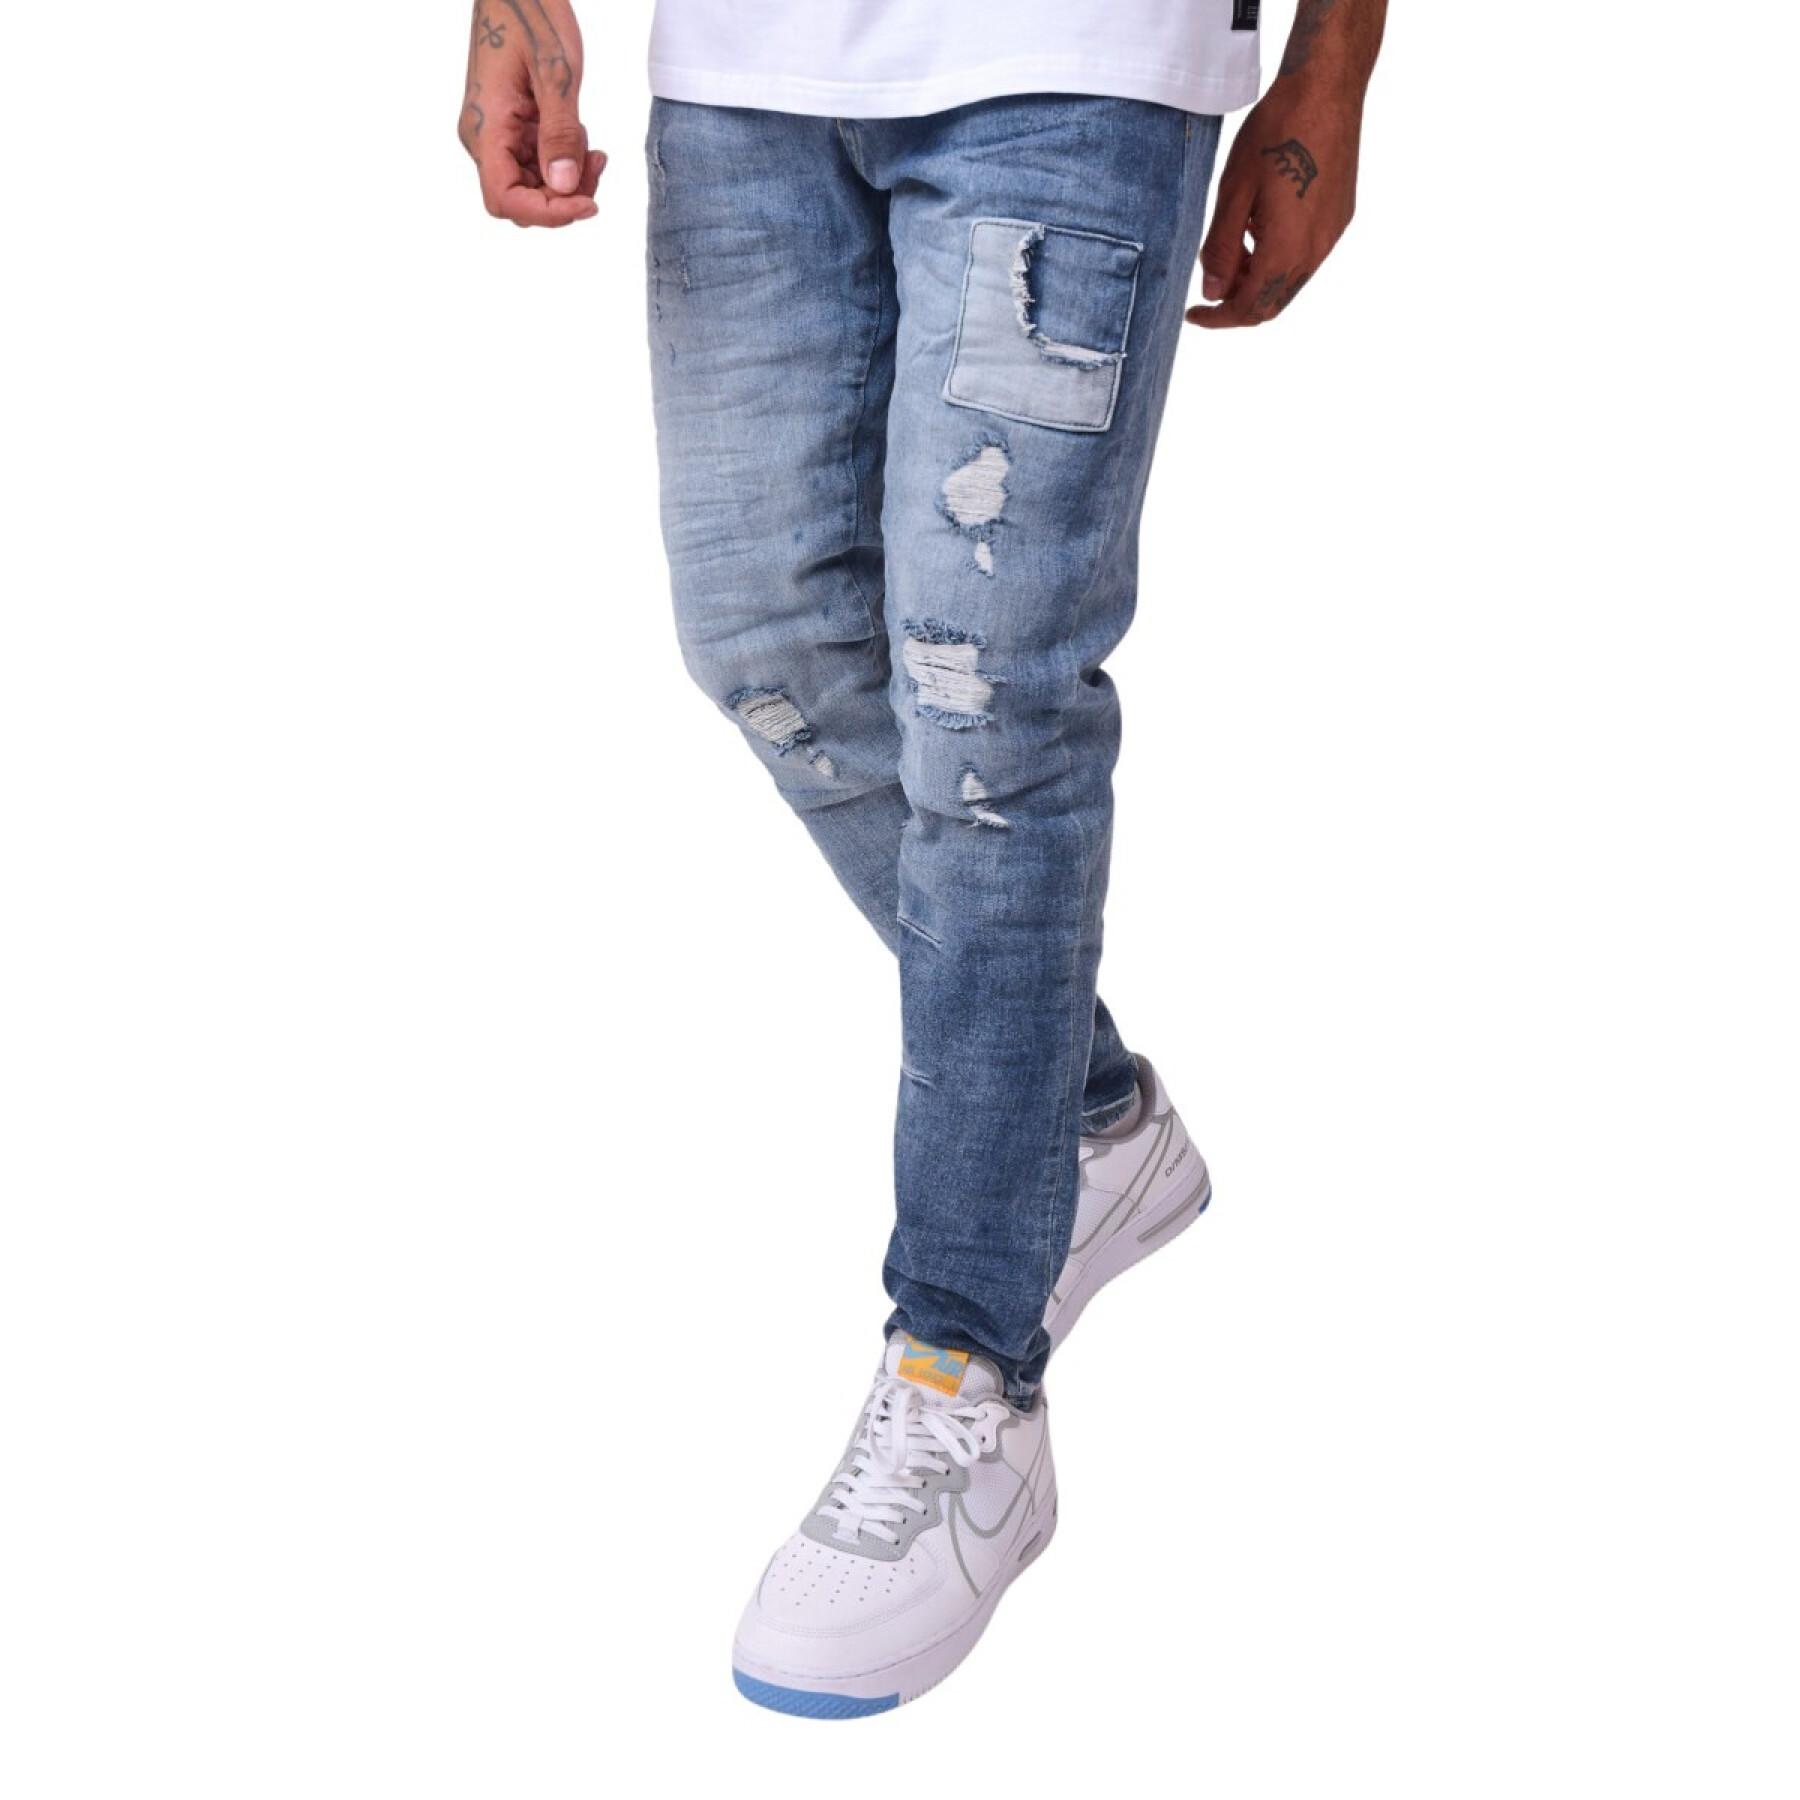 Skinny jeans met opgestikte inzetstukken Project X Paris